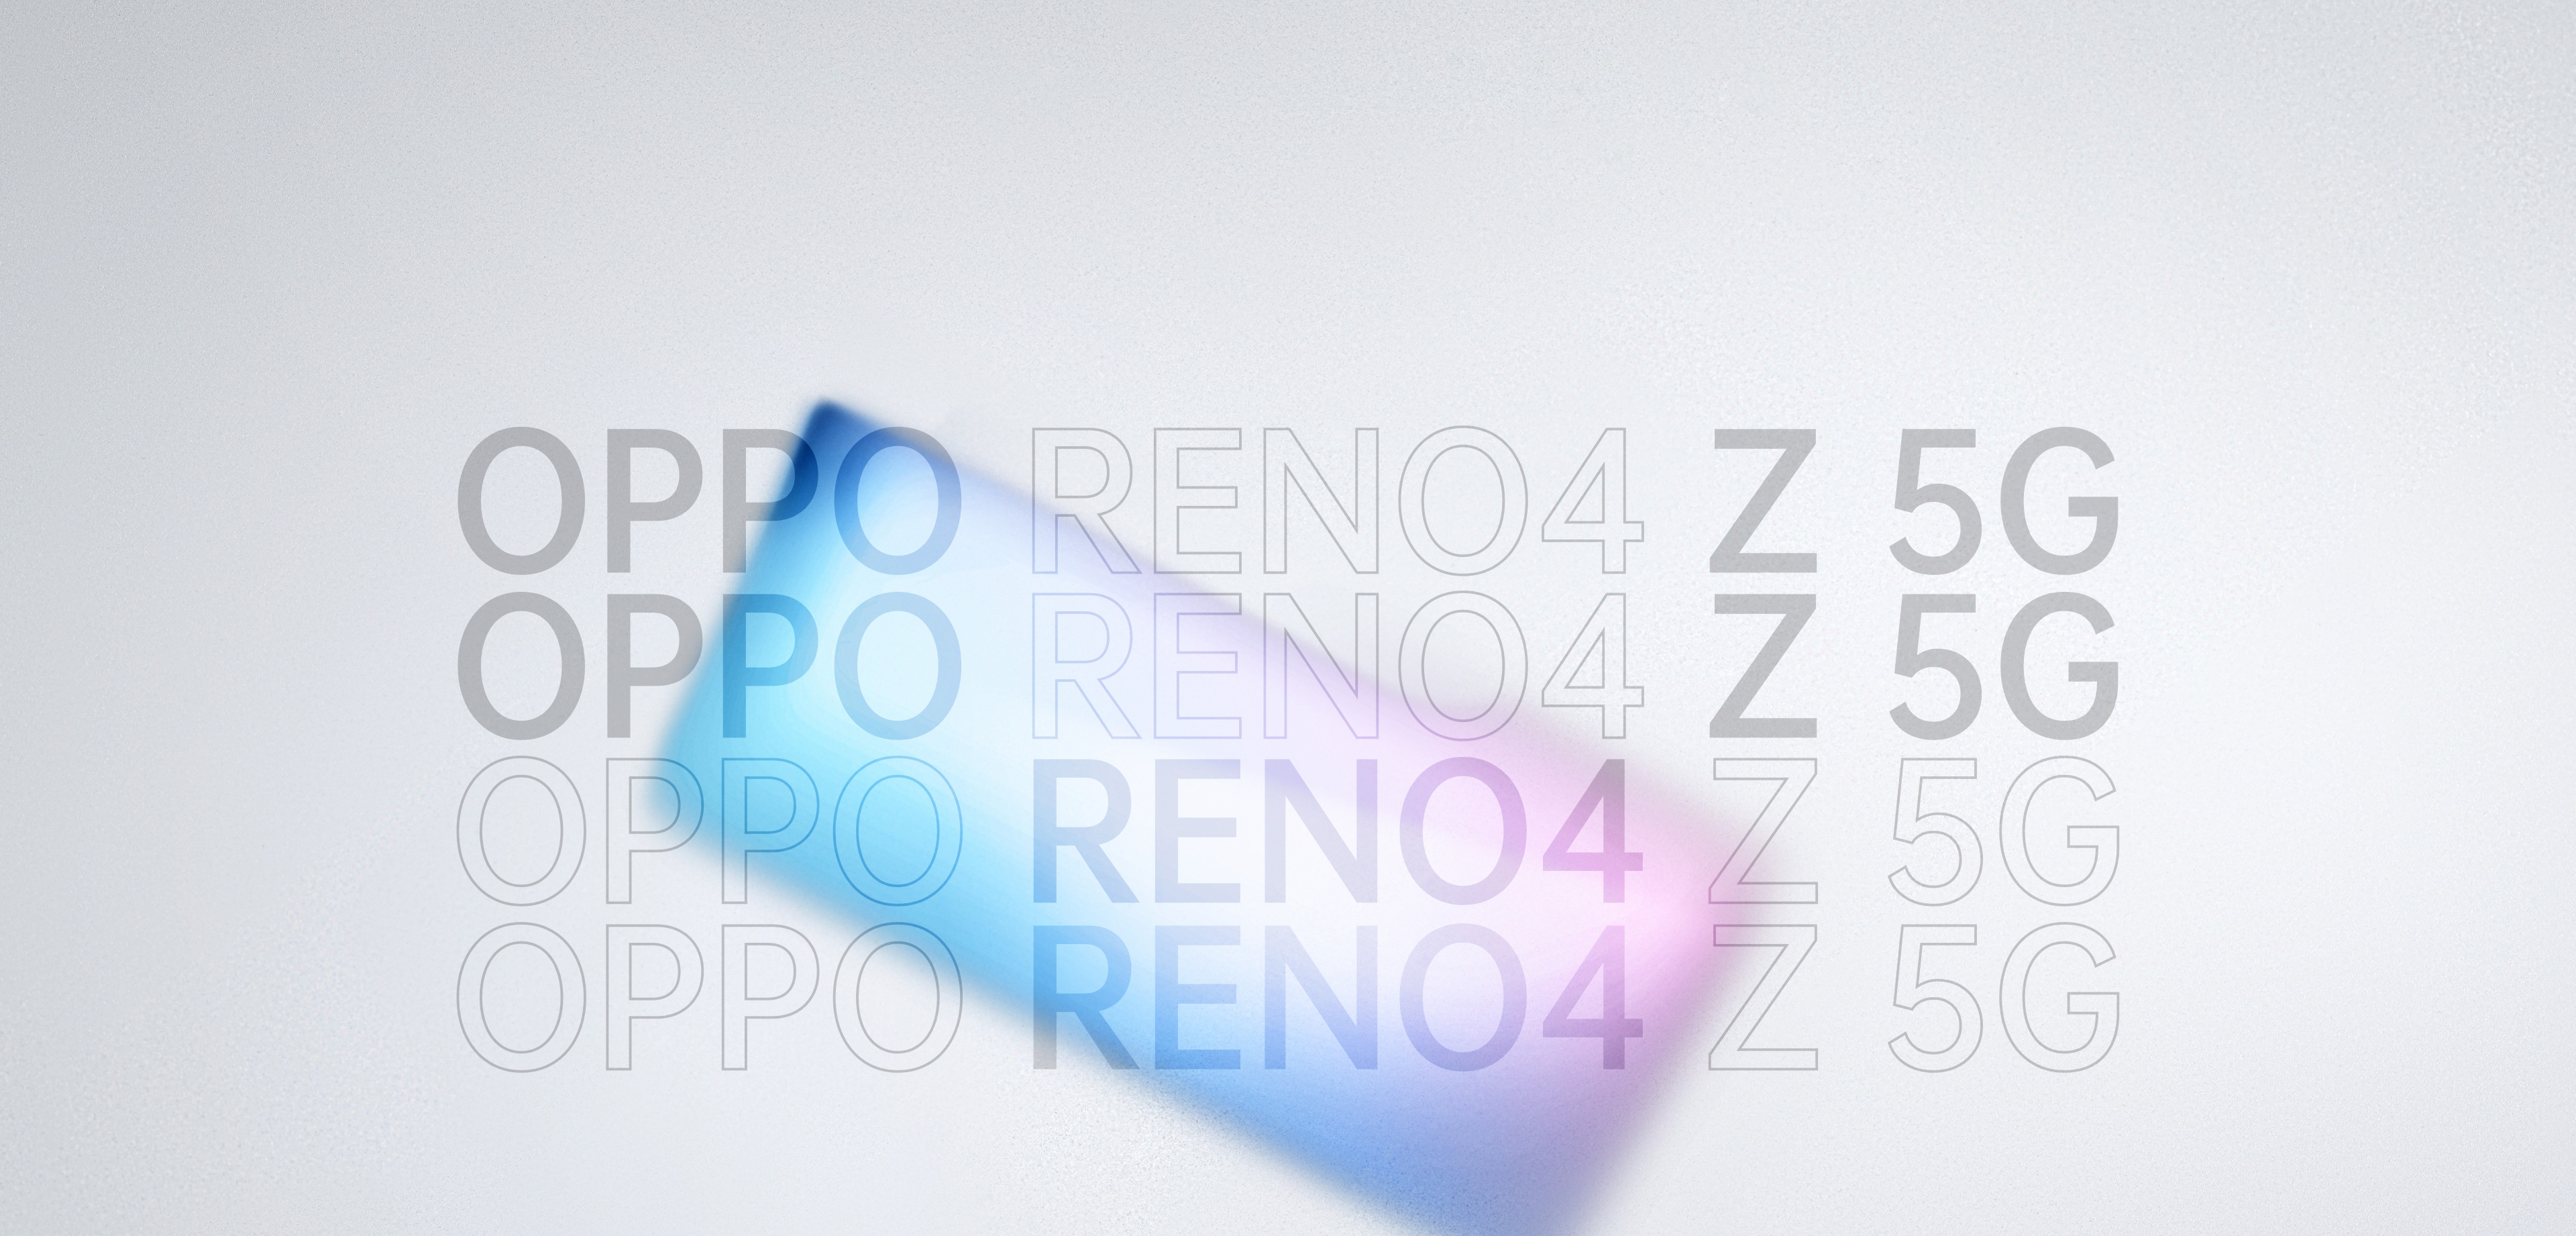 OPPO Reno4 Z 5G